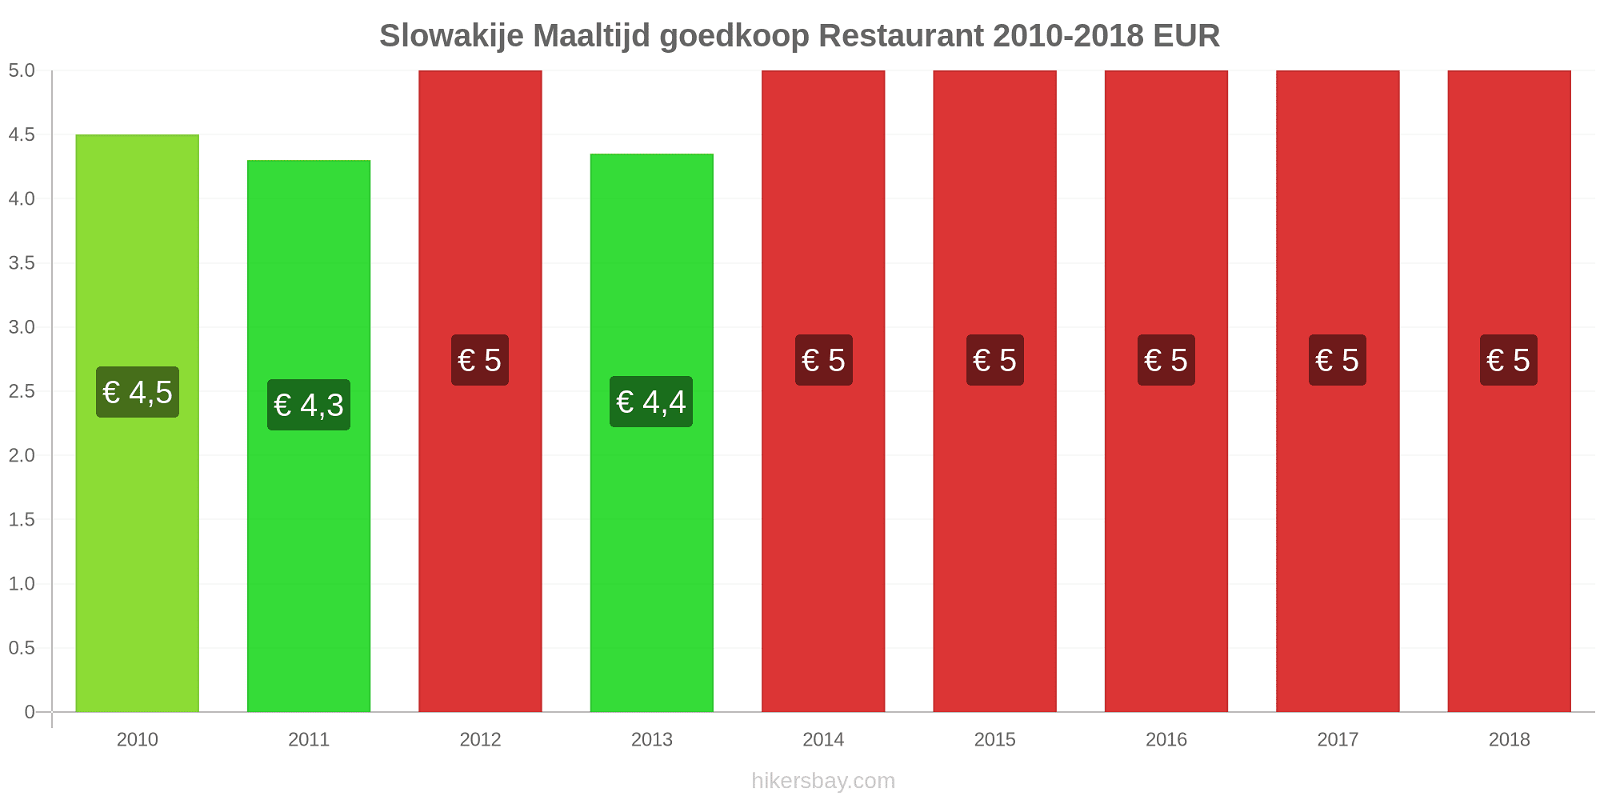 Slowakije prijswijzigingen Maaltijd in een goedkoop restaurant hikersbay.com